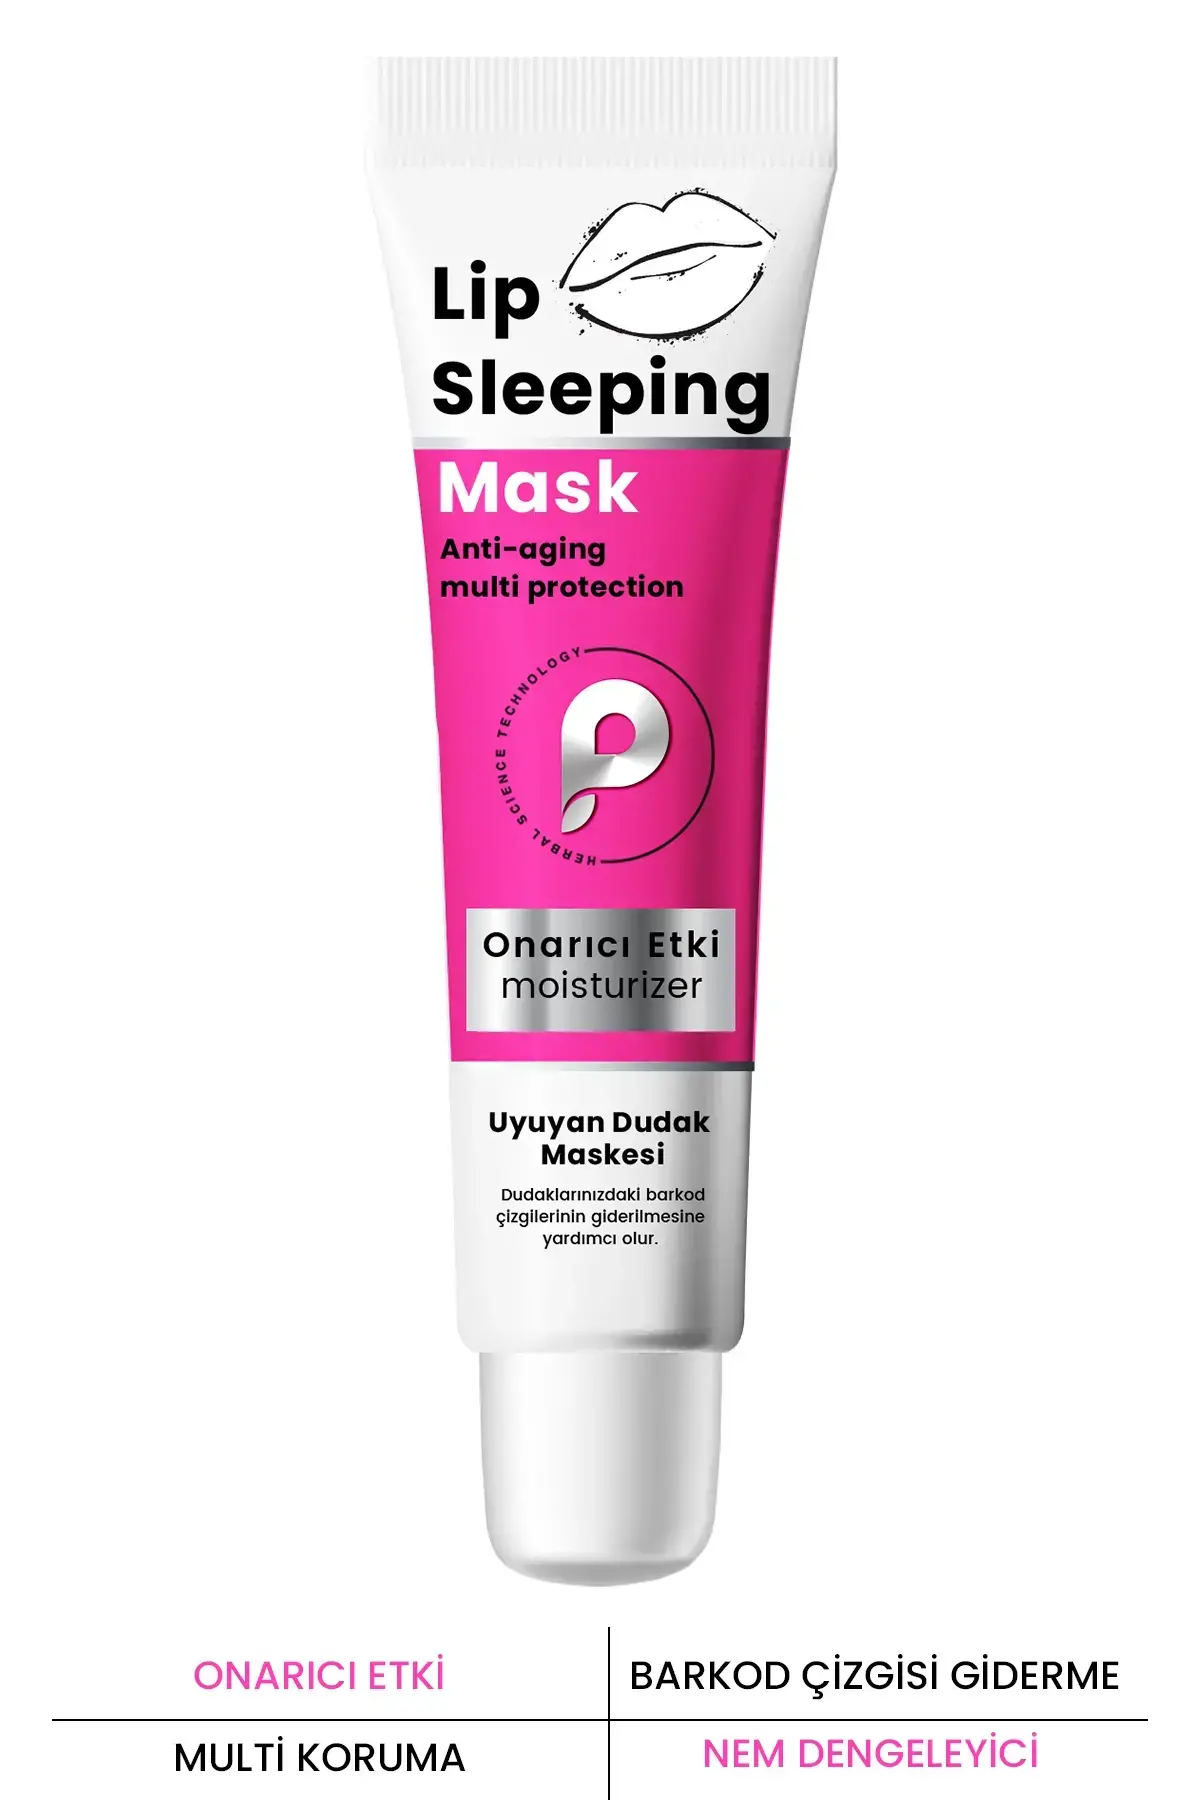 PROCSIN Nemlendirici ve Onarıcı Dudak Maskesi Lip Sleeping Mask 15 ML - 1